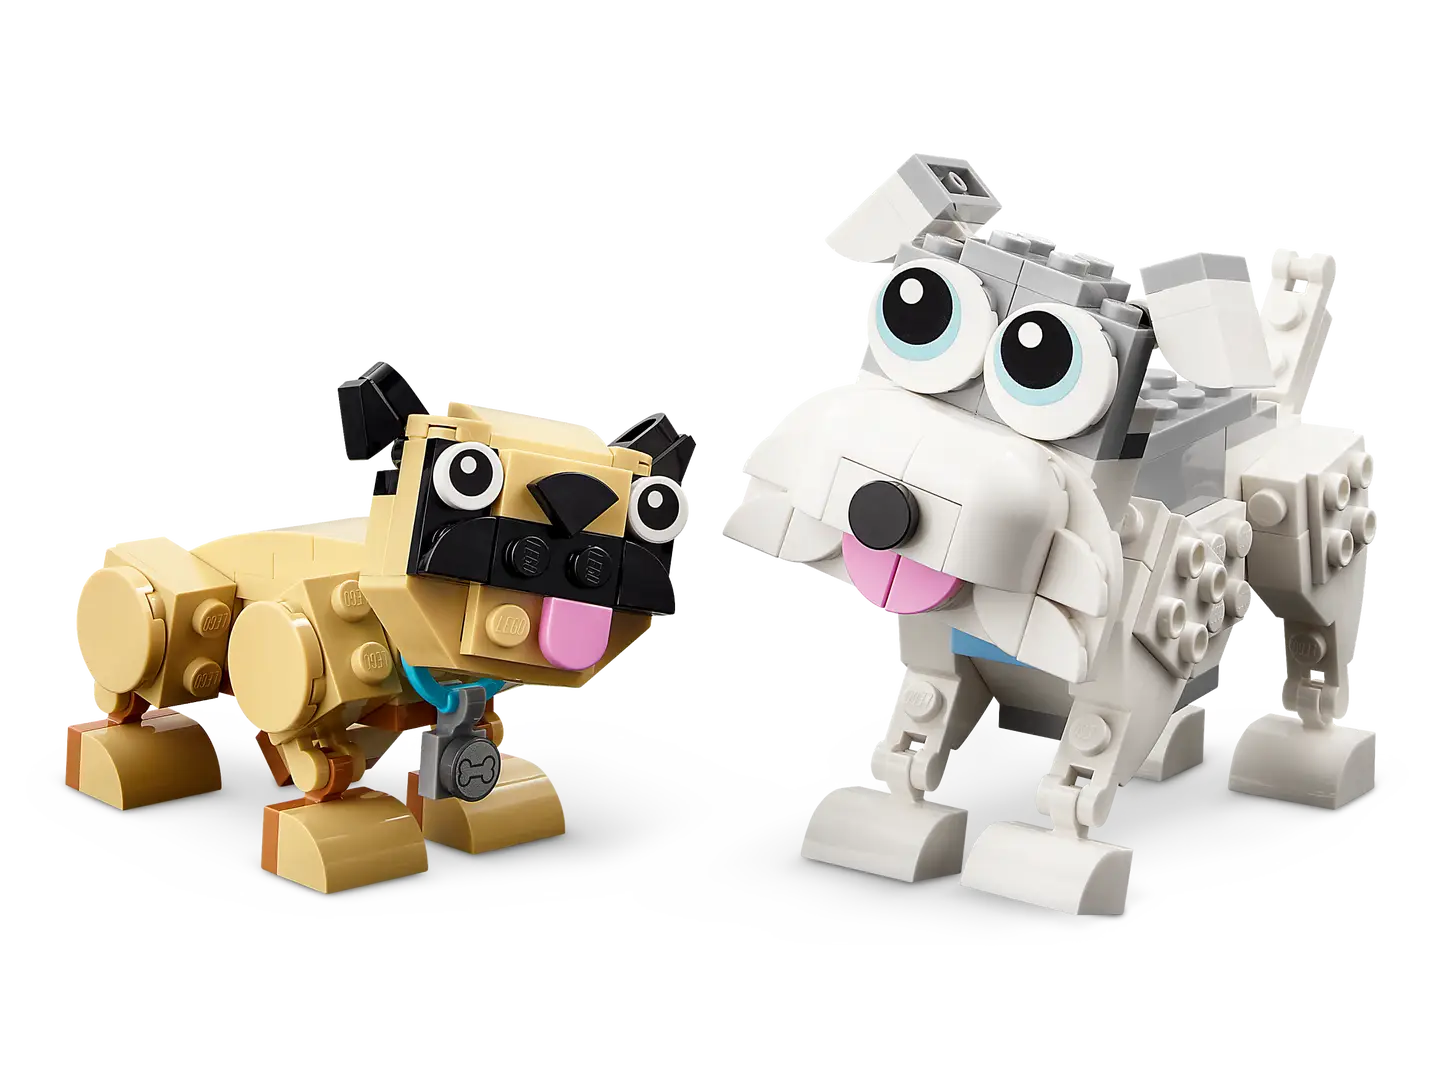 Lego Creator - Adorable Dogs